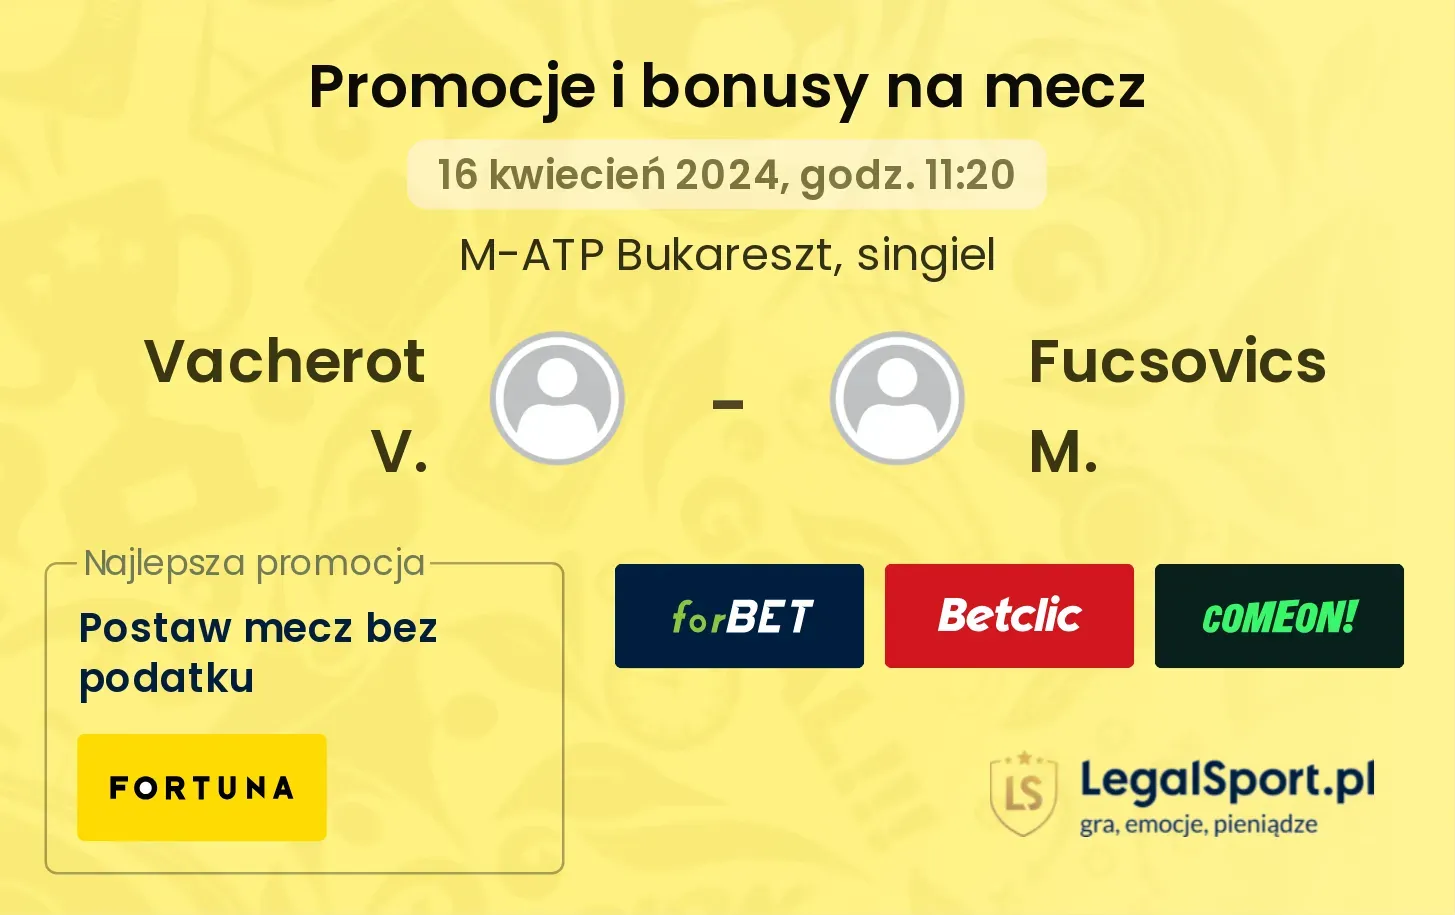 Vacherot V. - Fucsovics M. promocje bonusy na mecz